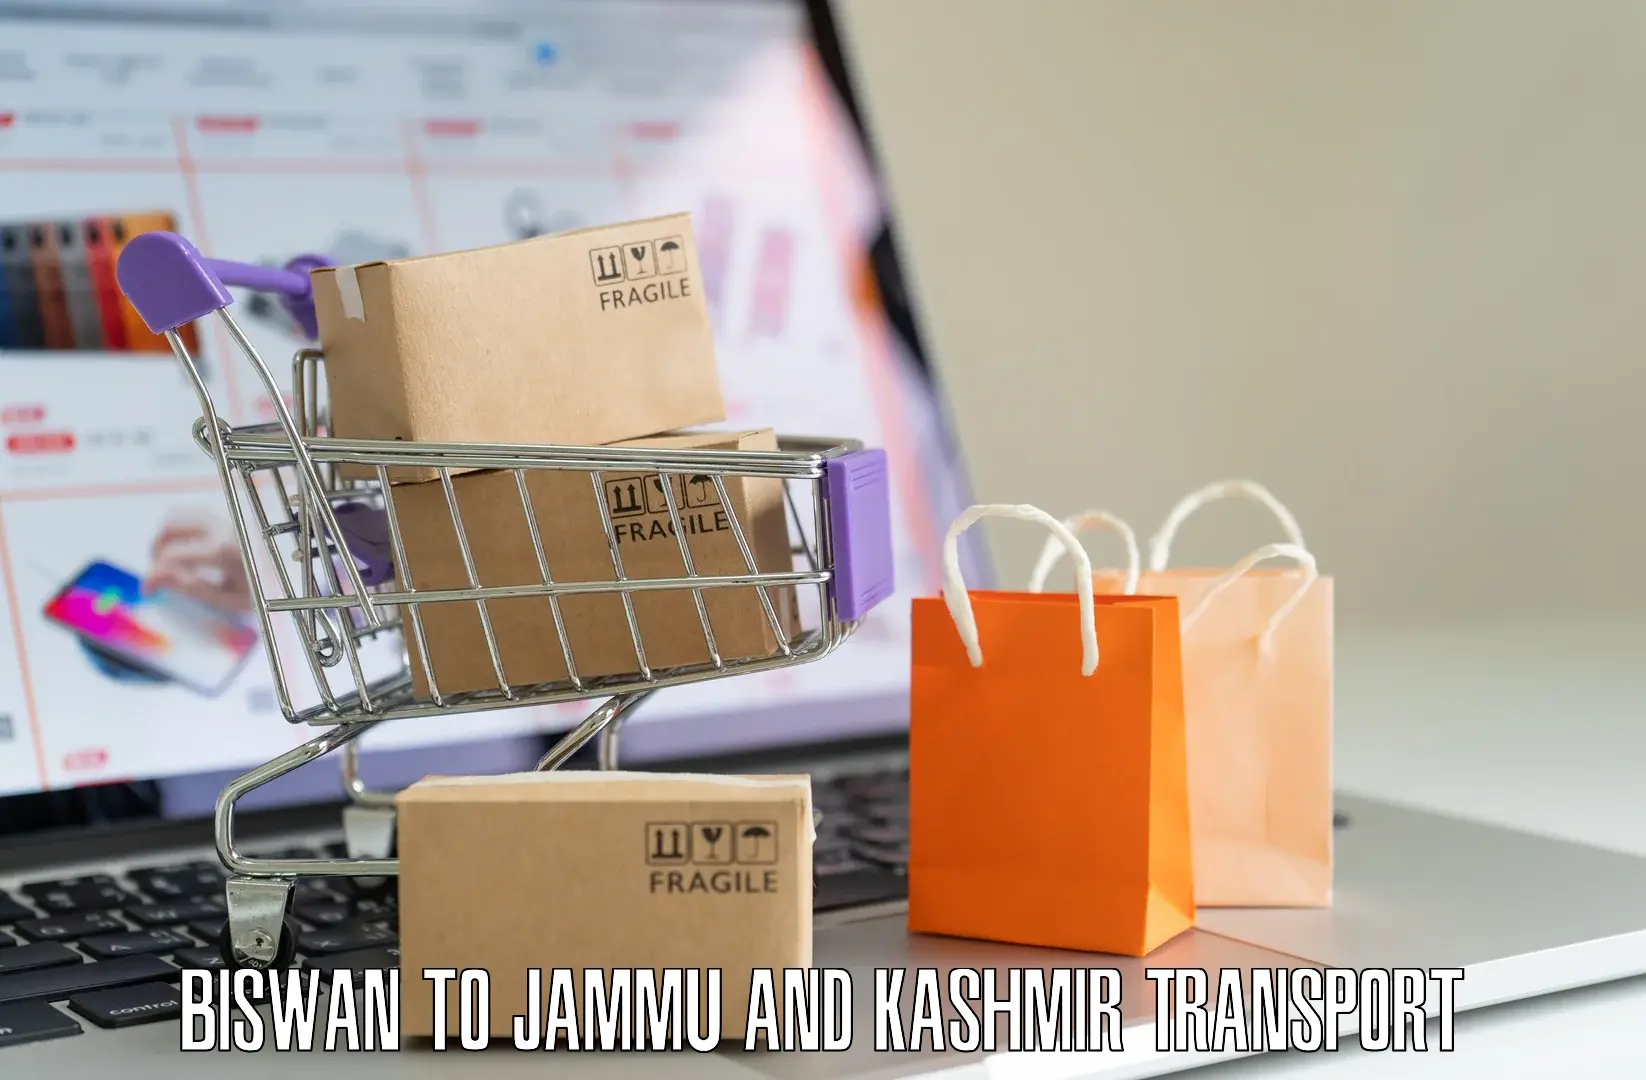 Parcel transport services Biswan to Jammu and Kashmir